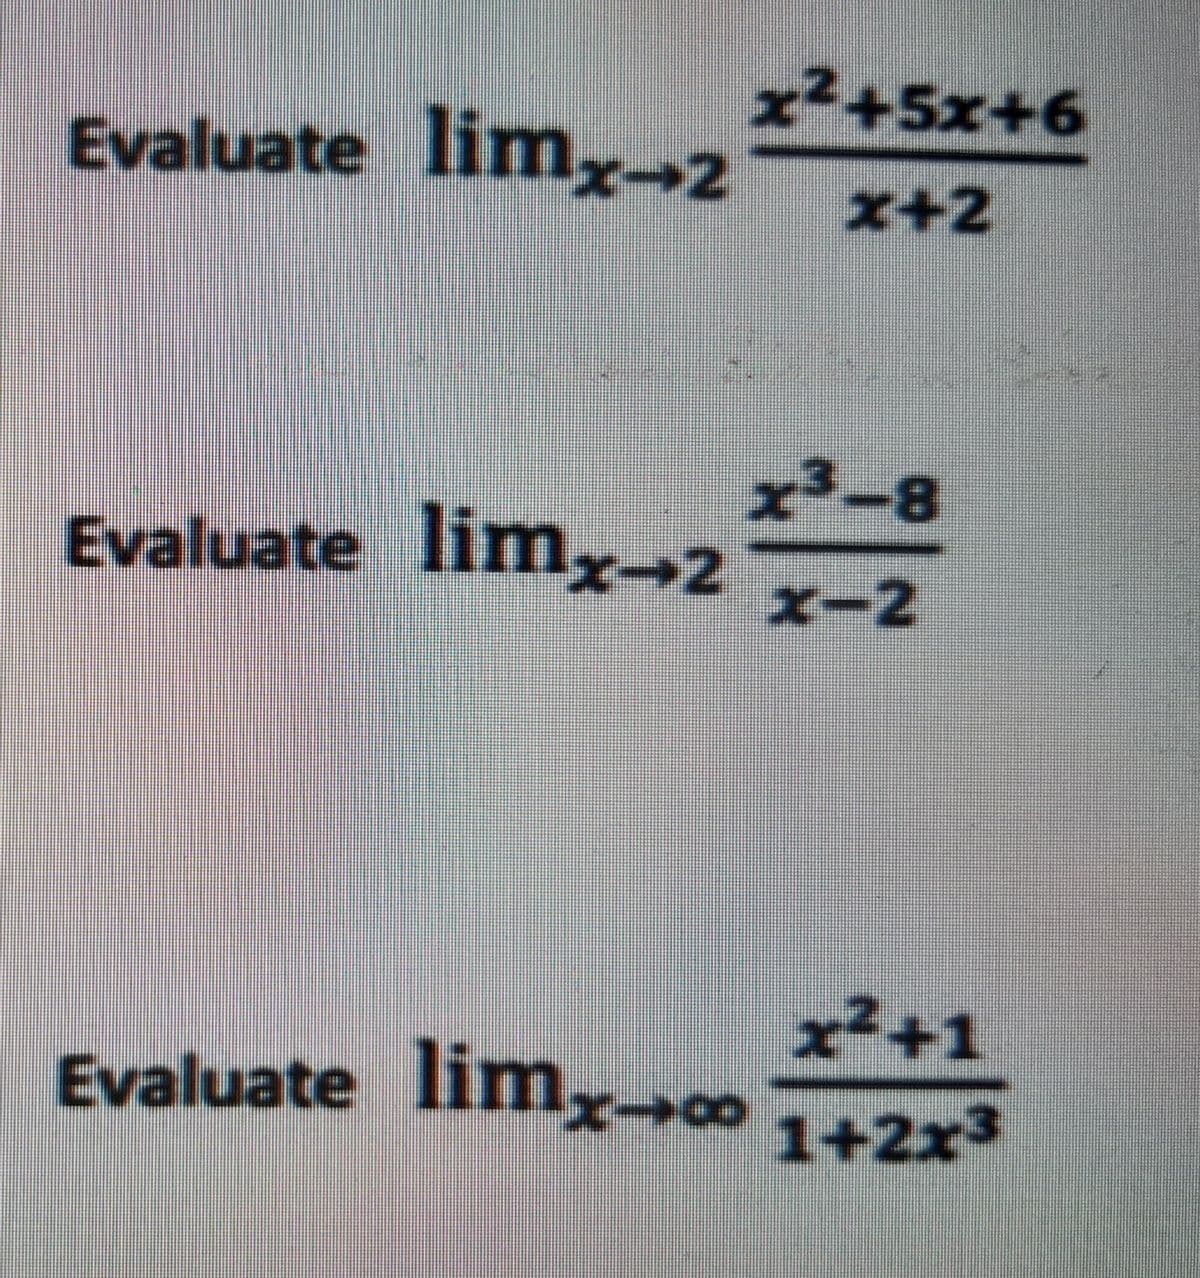 x²+5x+6
x+2
Evaluate limx→2
Evaluate limx→2
x²+1
Evaluate lim 142x3
x³-8
x-2